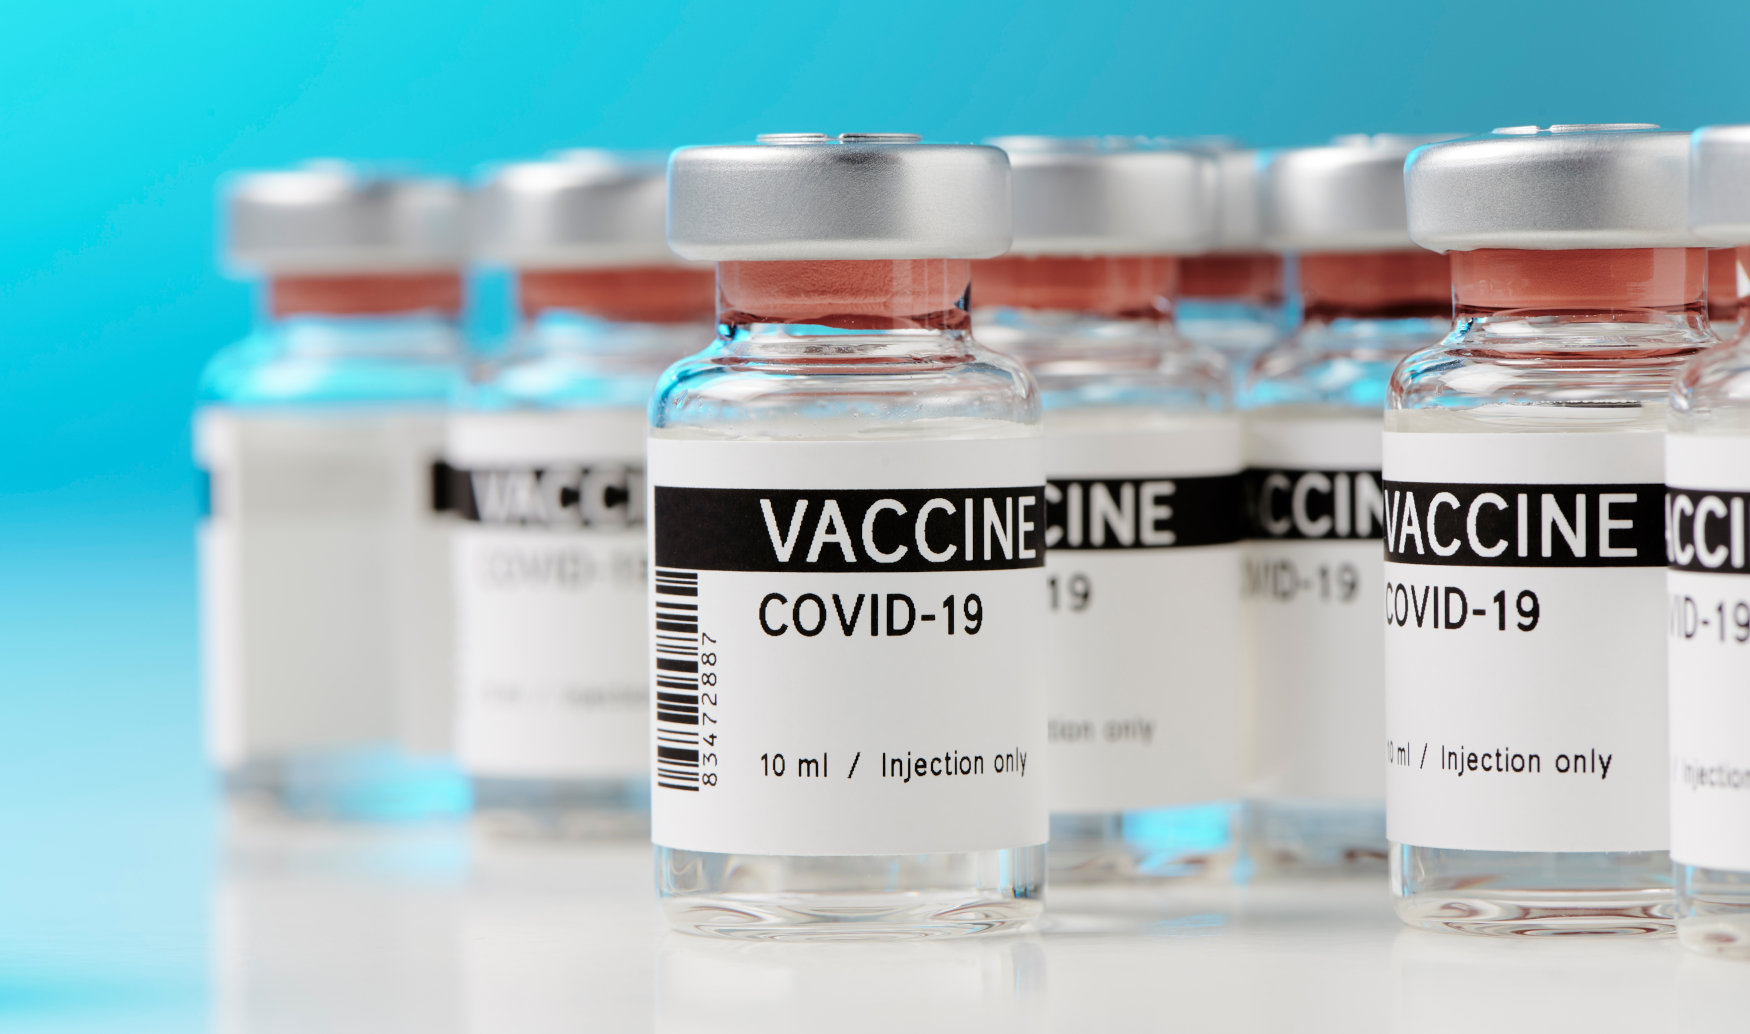 Πλεύρης: Προανήγγειλε αλλαγές στην υποχρεωτικότητα των εμβολίων